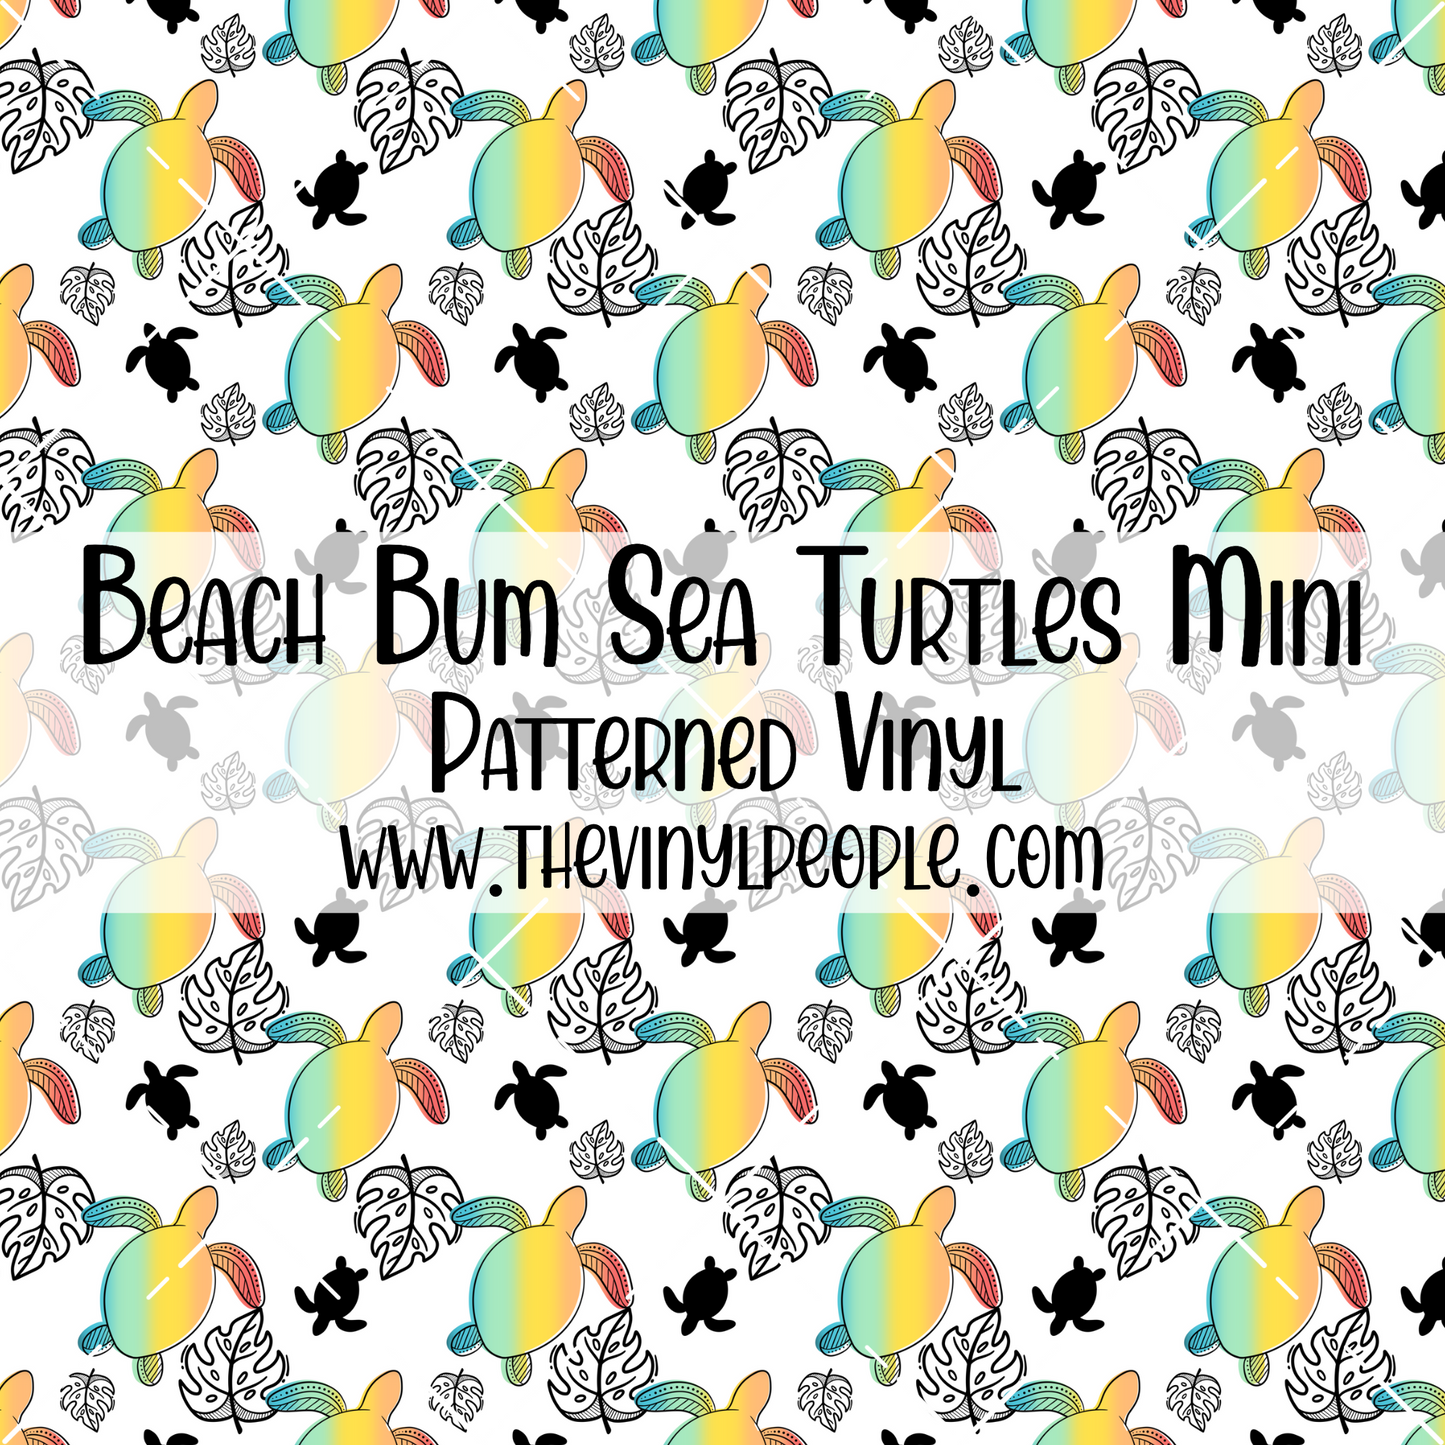 Beach Bum Sea Turtles Patterned Vinyl